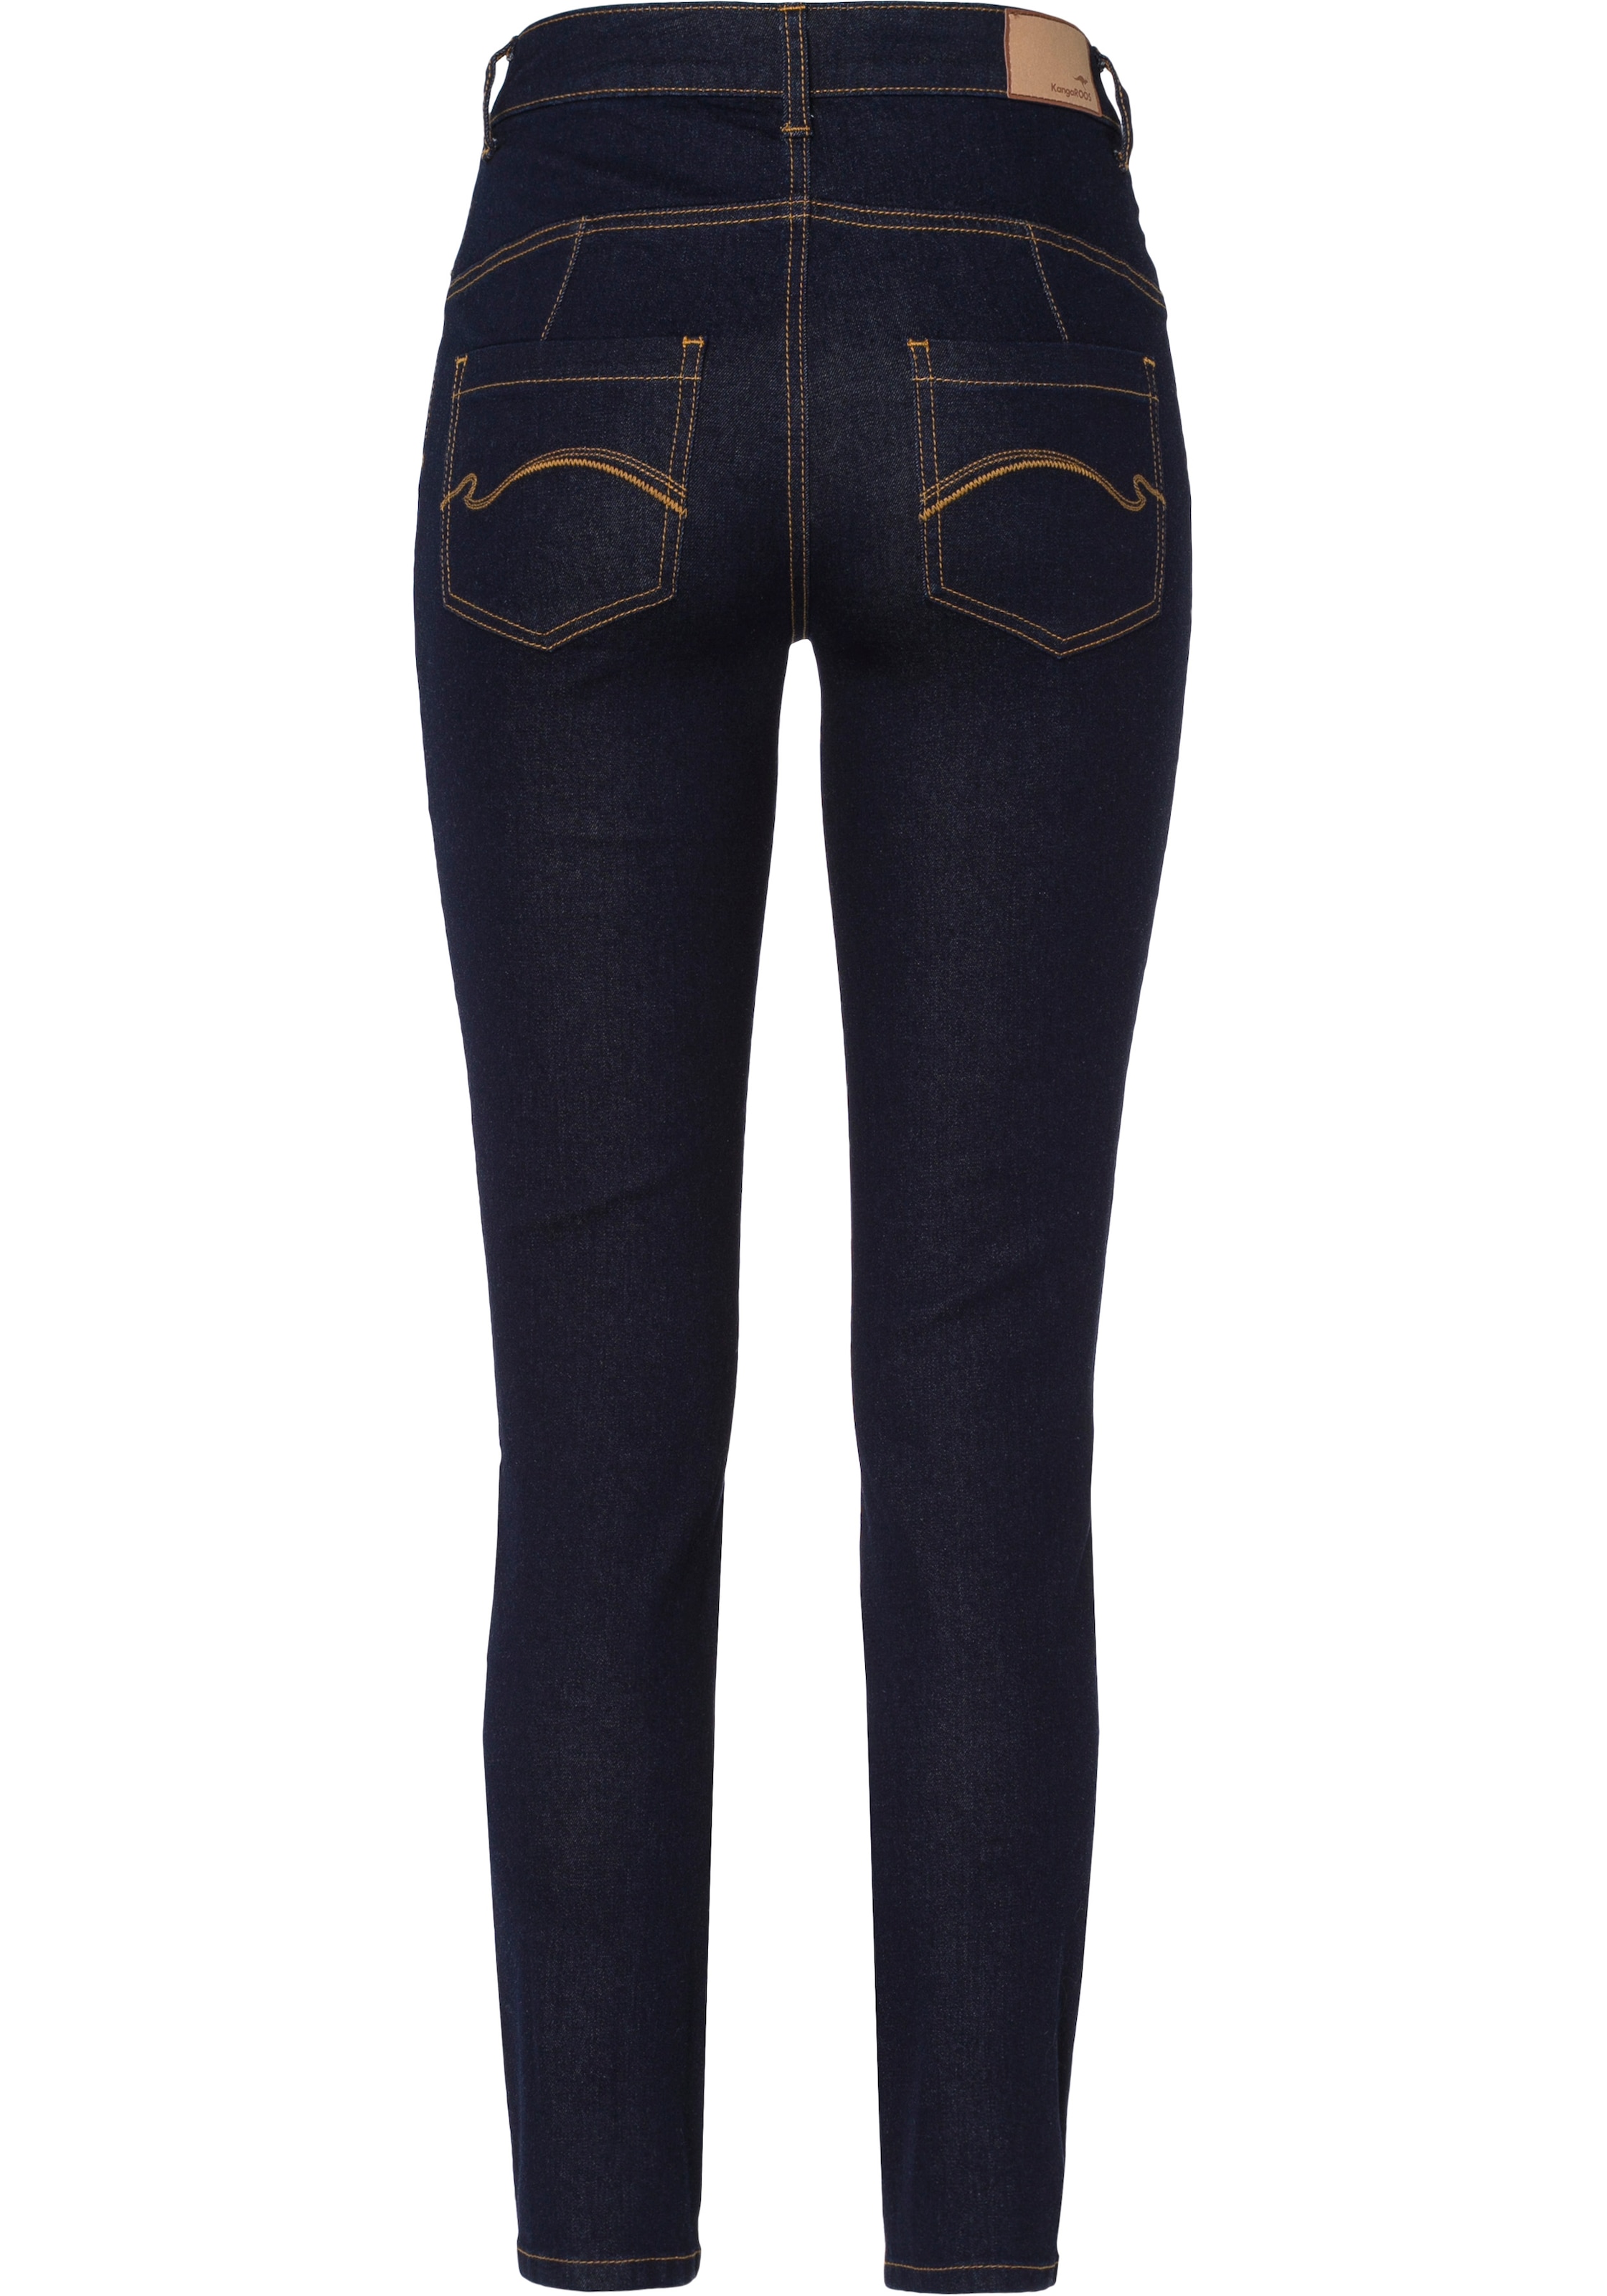 KangaROOS KOLLEKTION bestellen WAIST SLIM Slim-fit-Jeans »CROPPED NEUE HIGH FIT«,